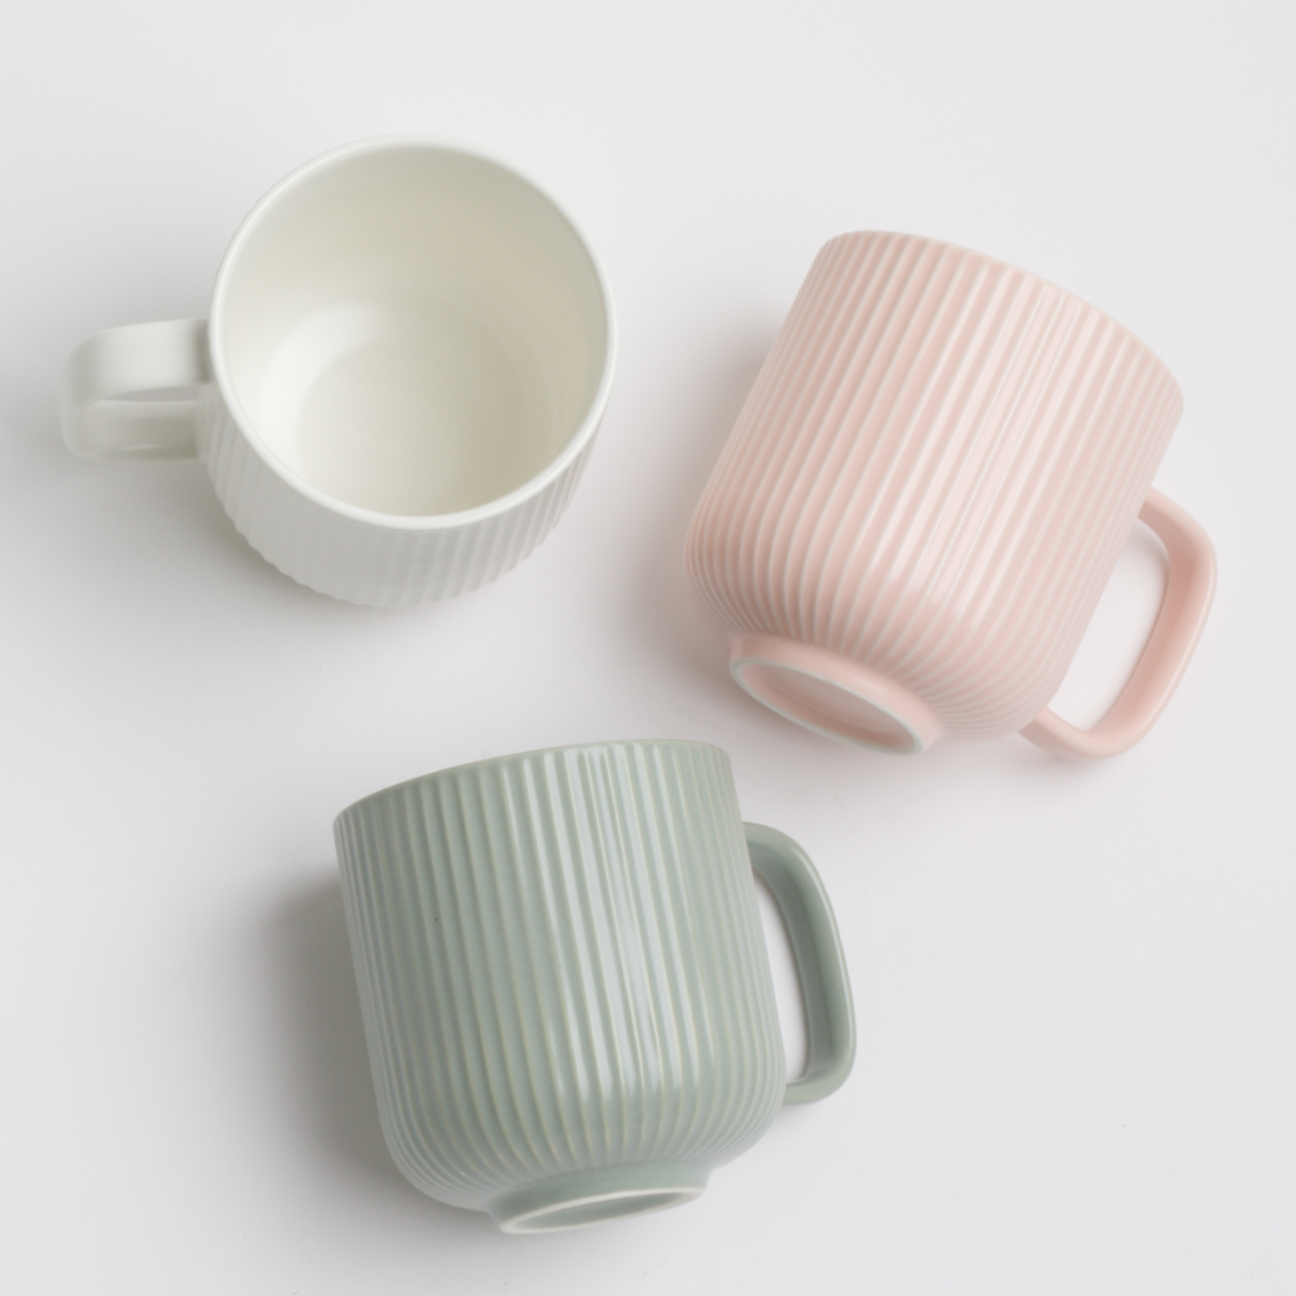 3 Ribbed Mugs: White, Baby Pink, & Sage Green